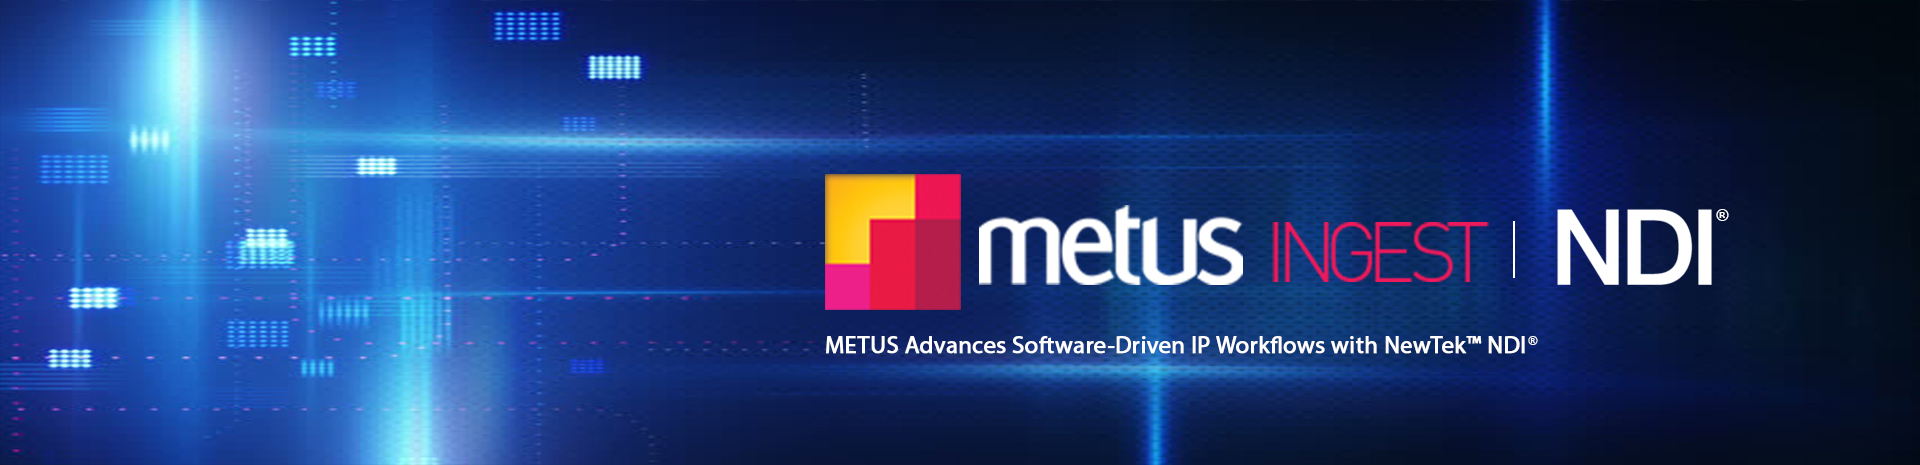 METUS Advances Software-Driven IP Workflows with NewTek NDI